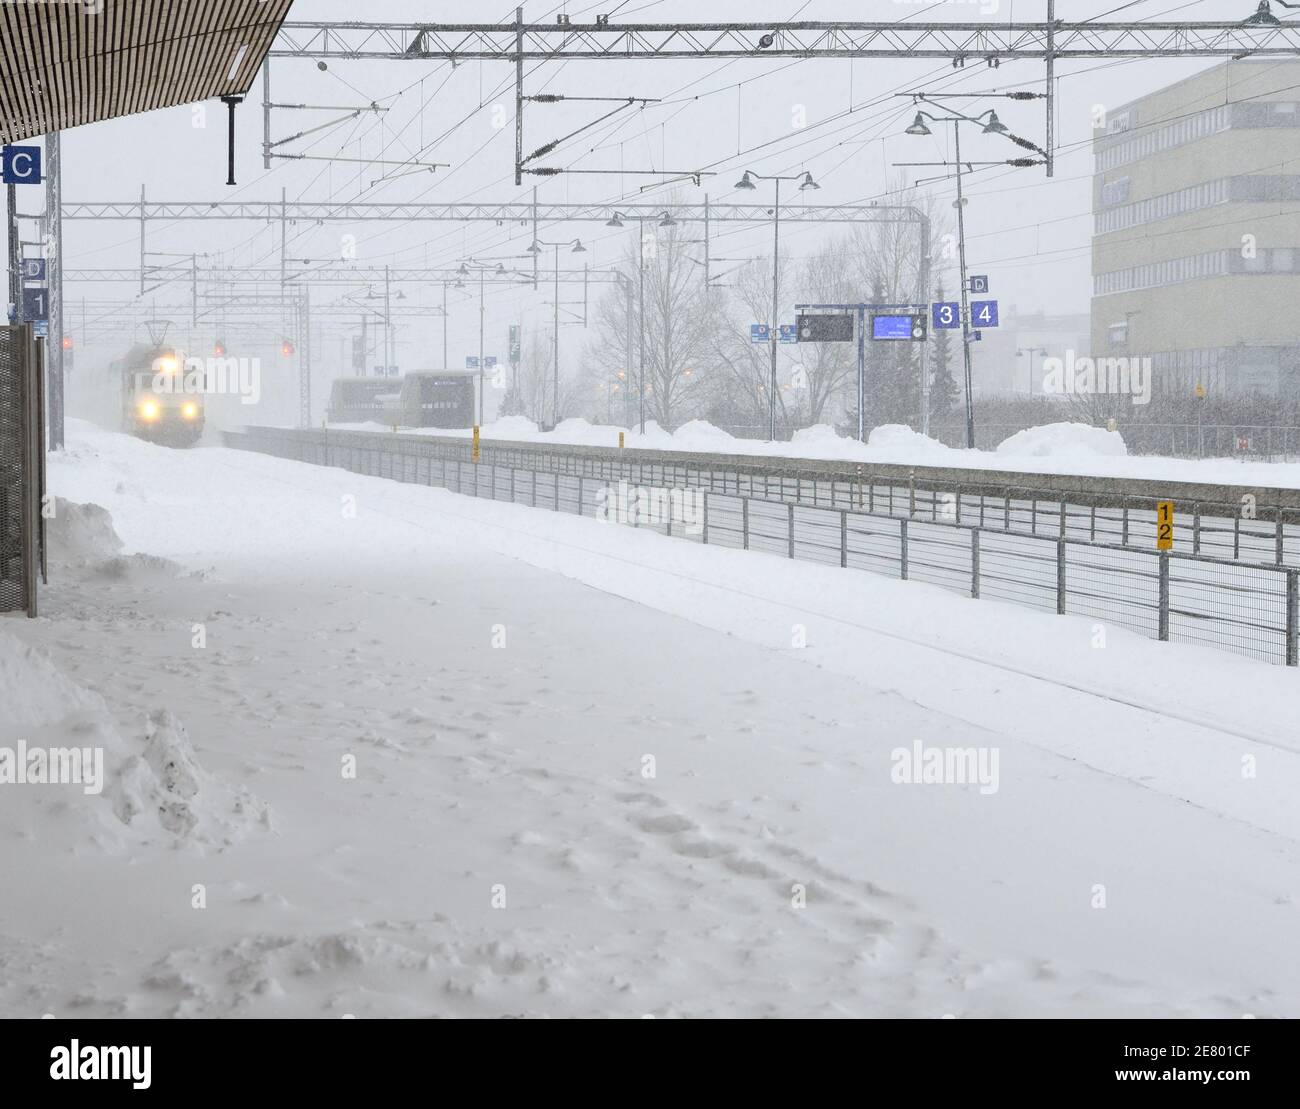 Der Zug kommt während eines Schneesturms am Bahnhof an Stockfoto